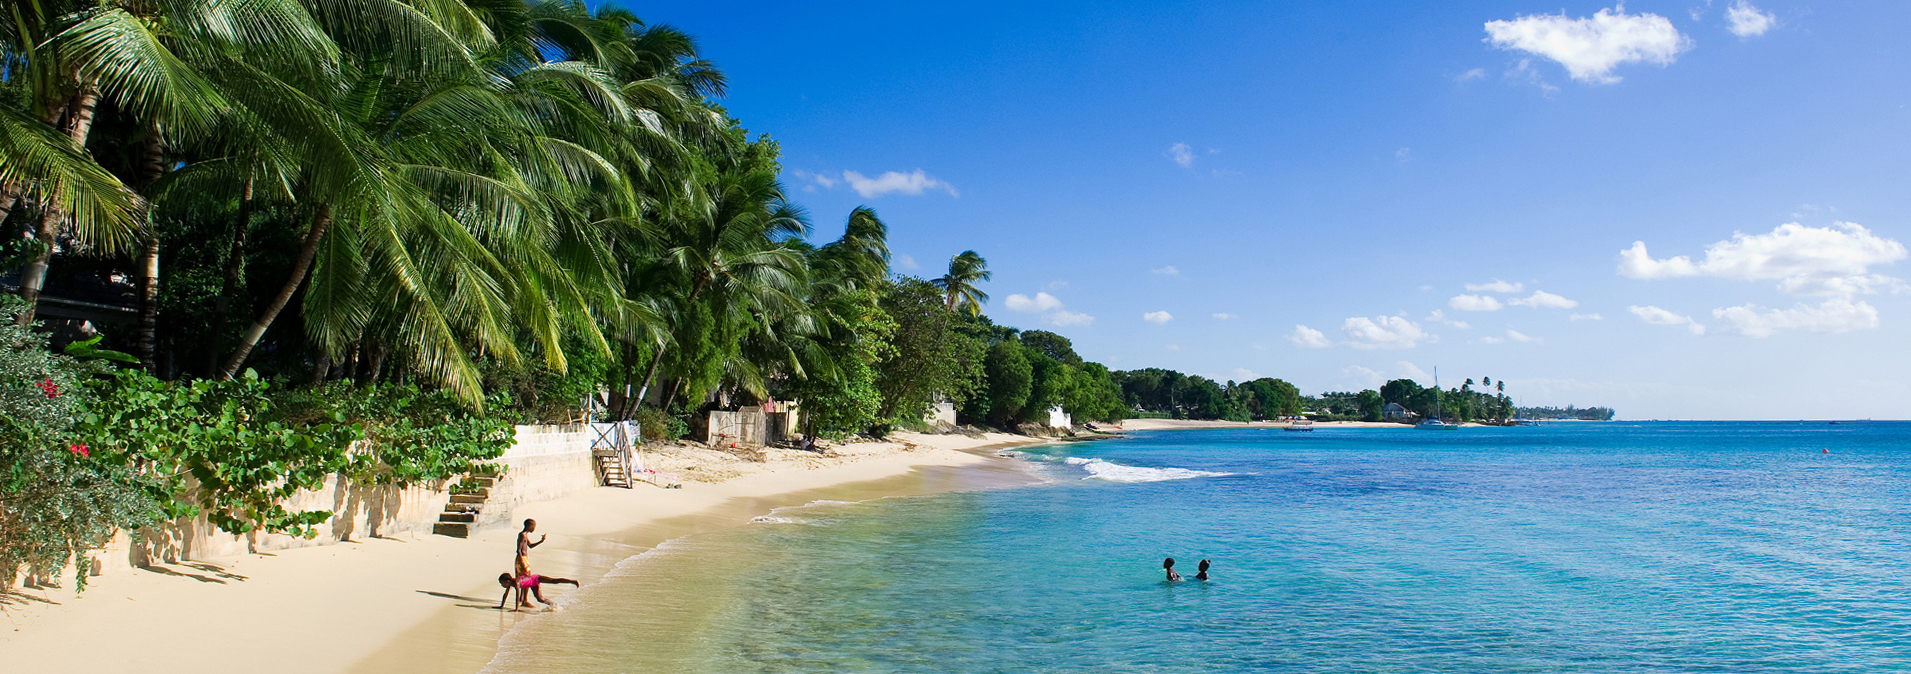 Schmale Strandbucht auf Barbados mit Palmen und badenden Kindern